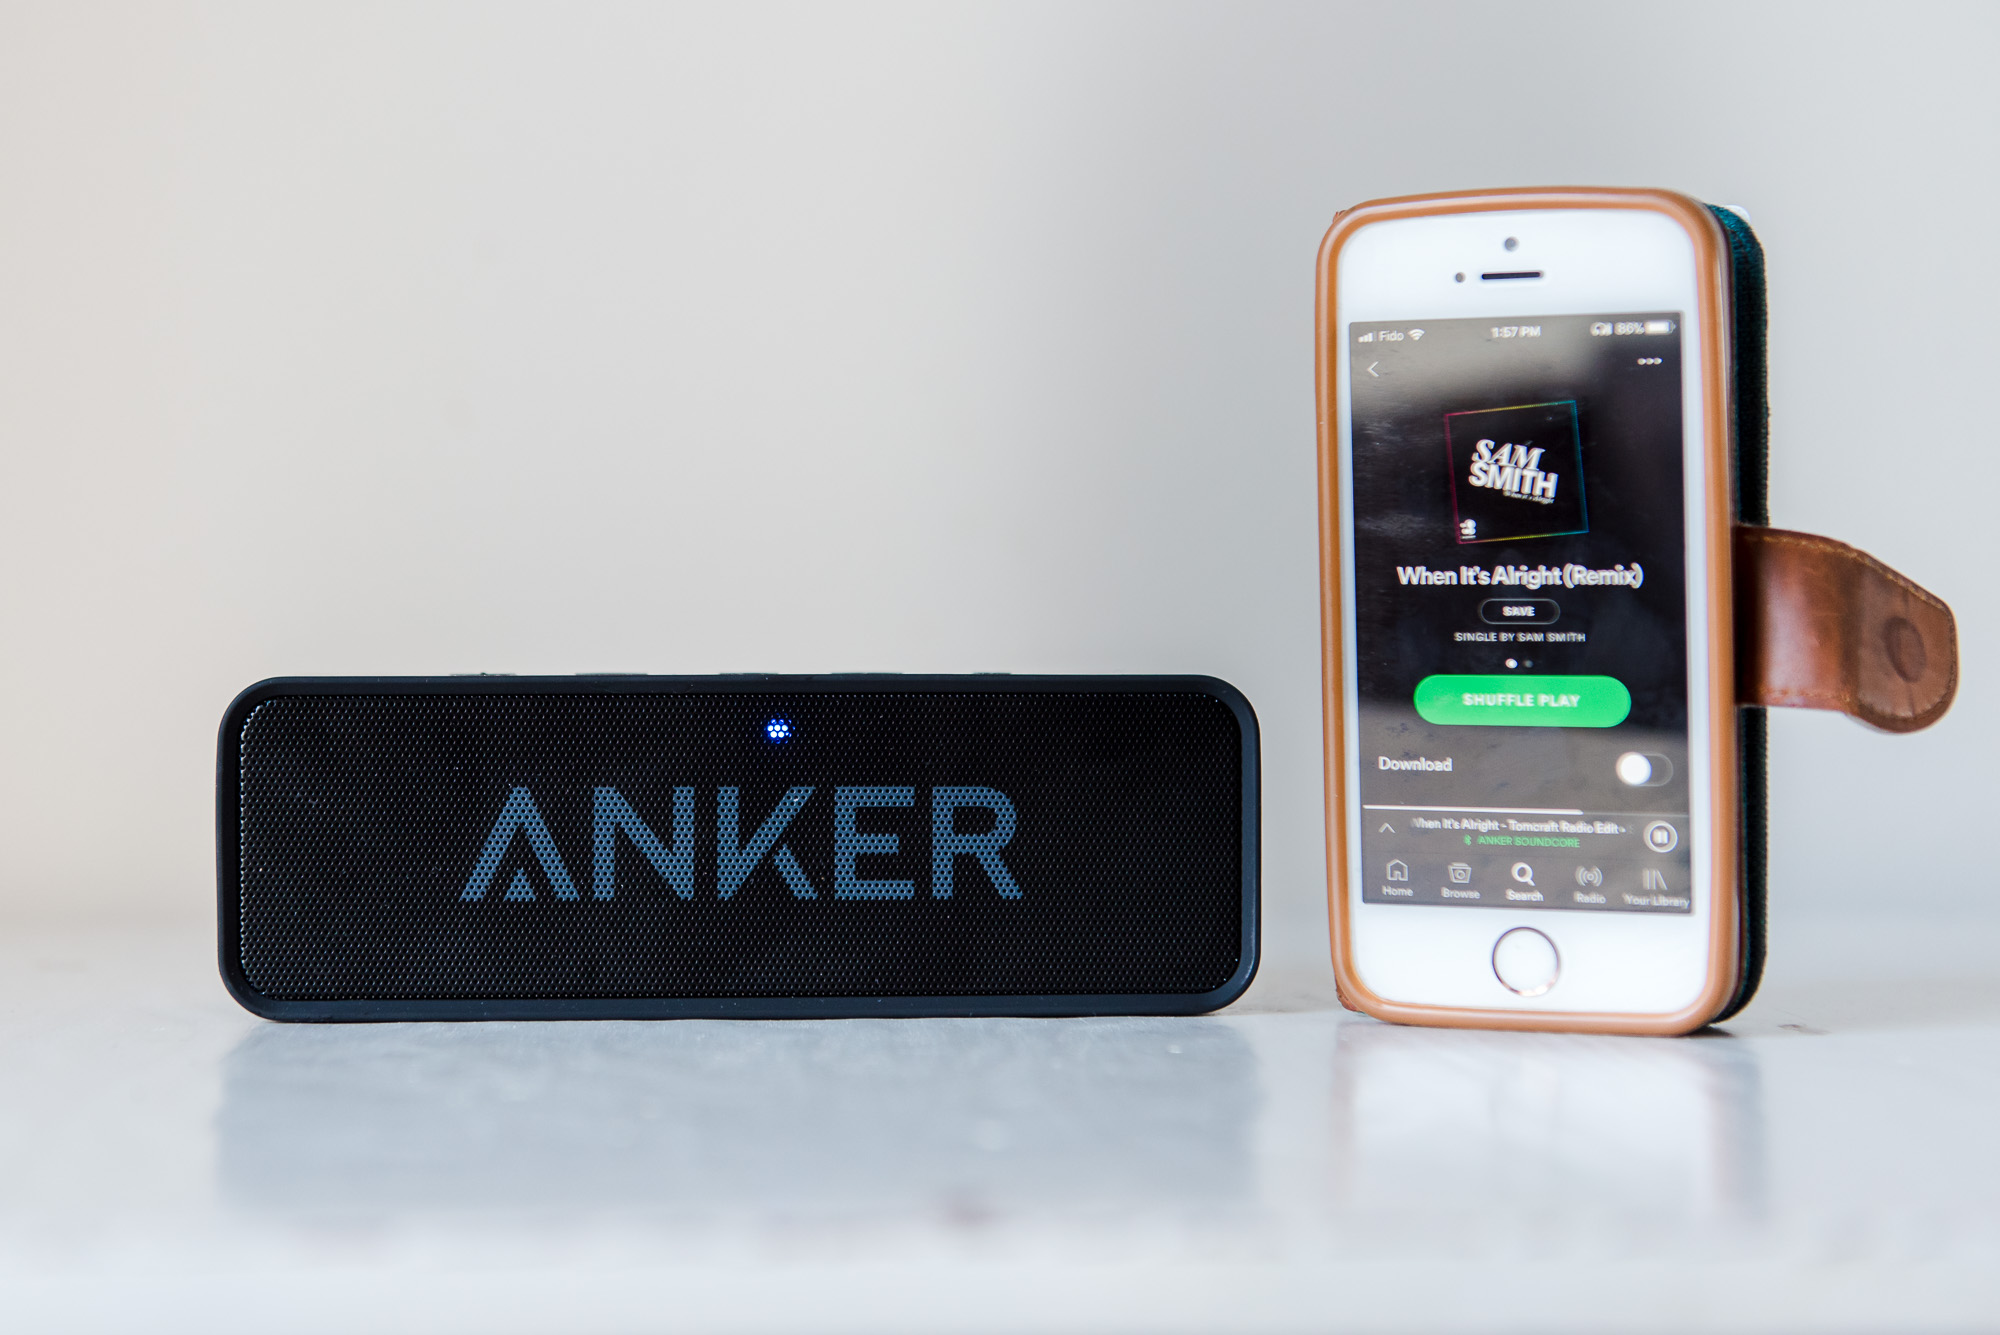 Anker Soundcore speaker - small bluetooth speaker